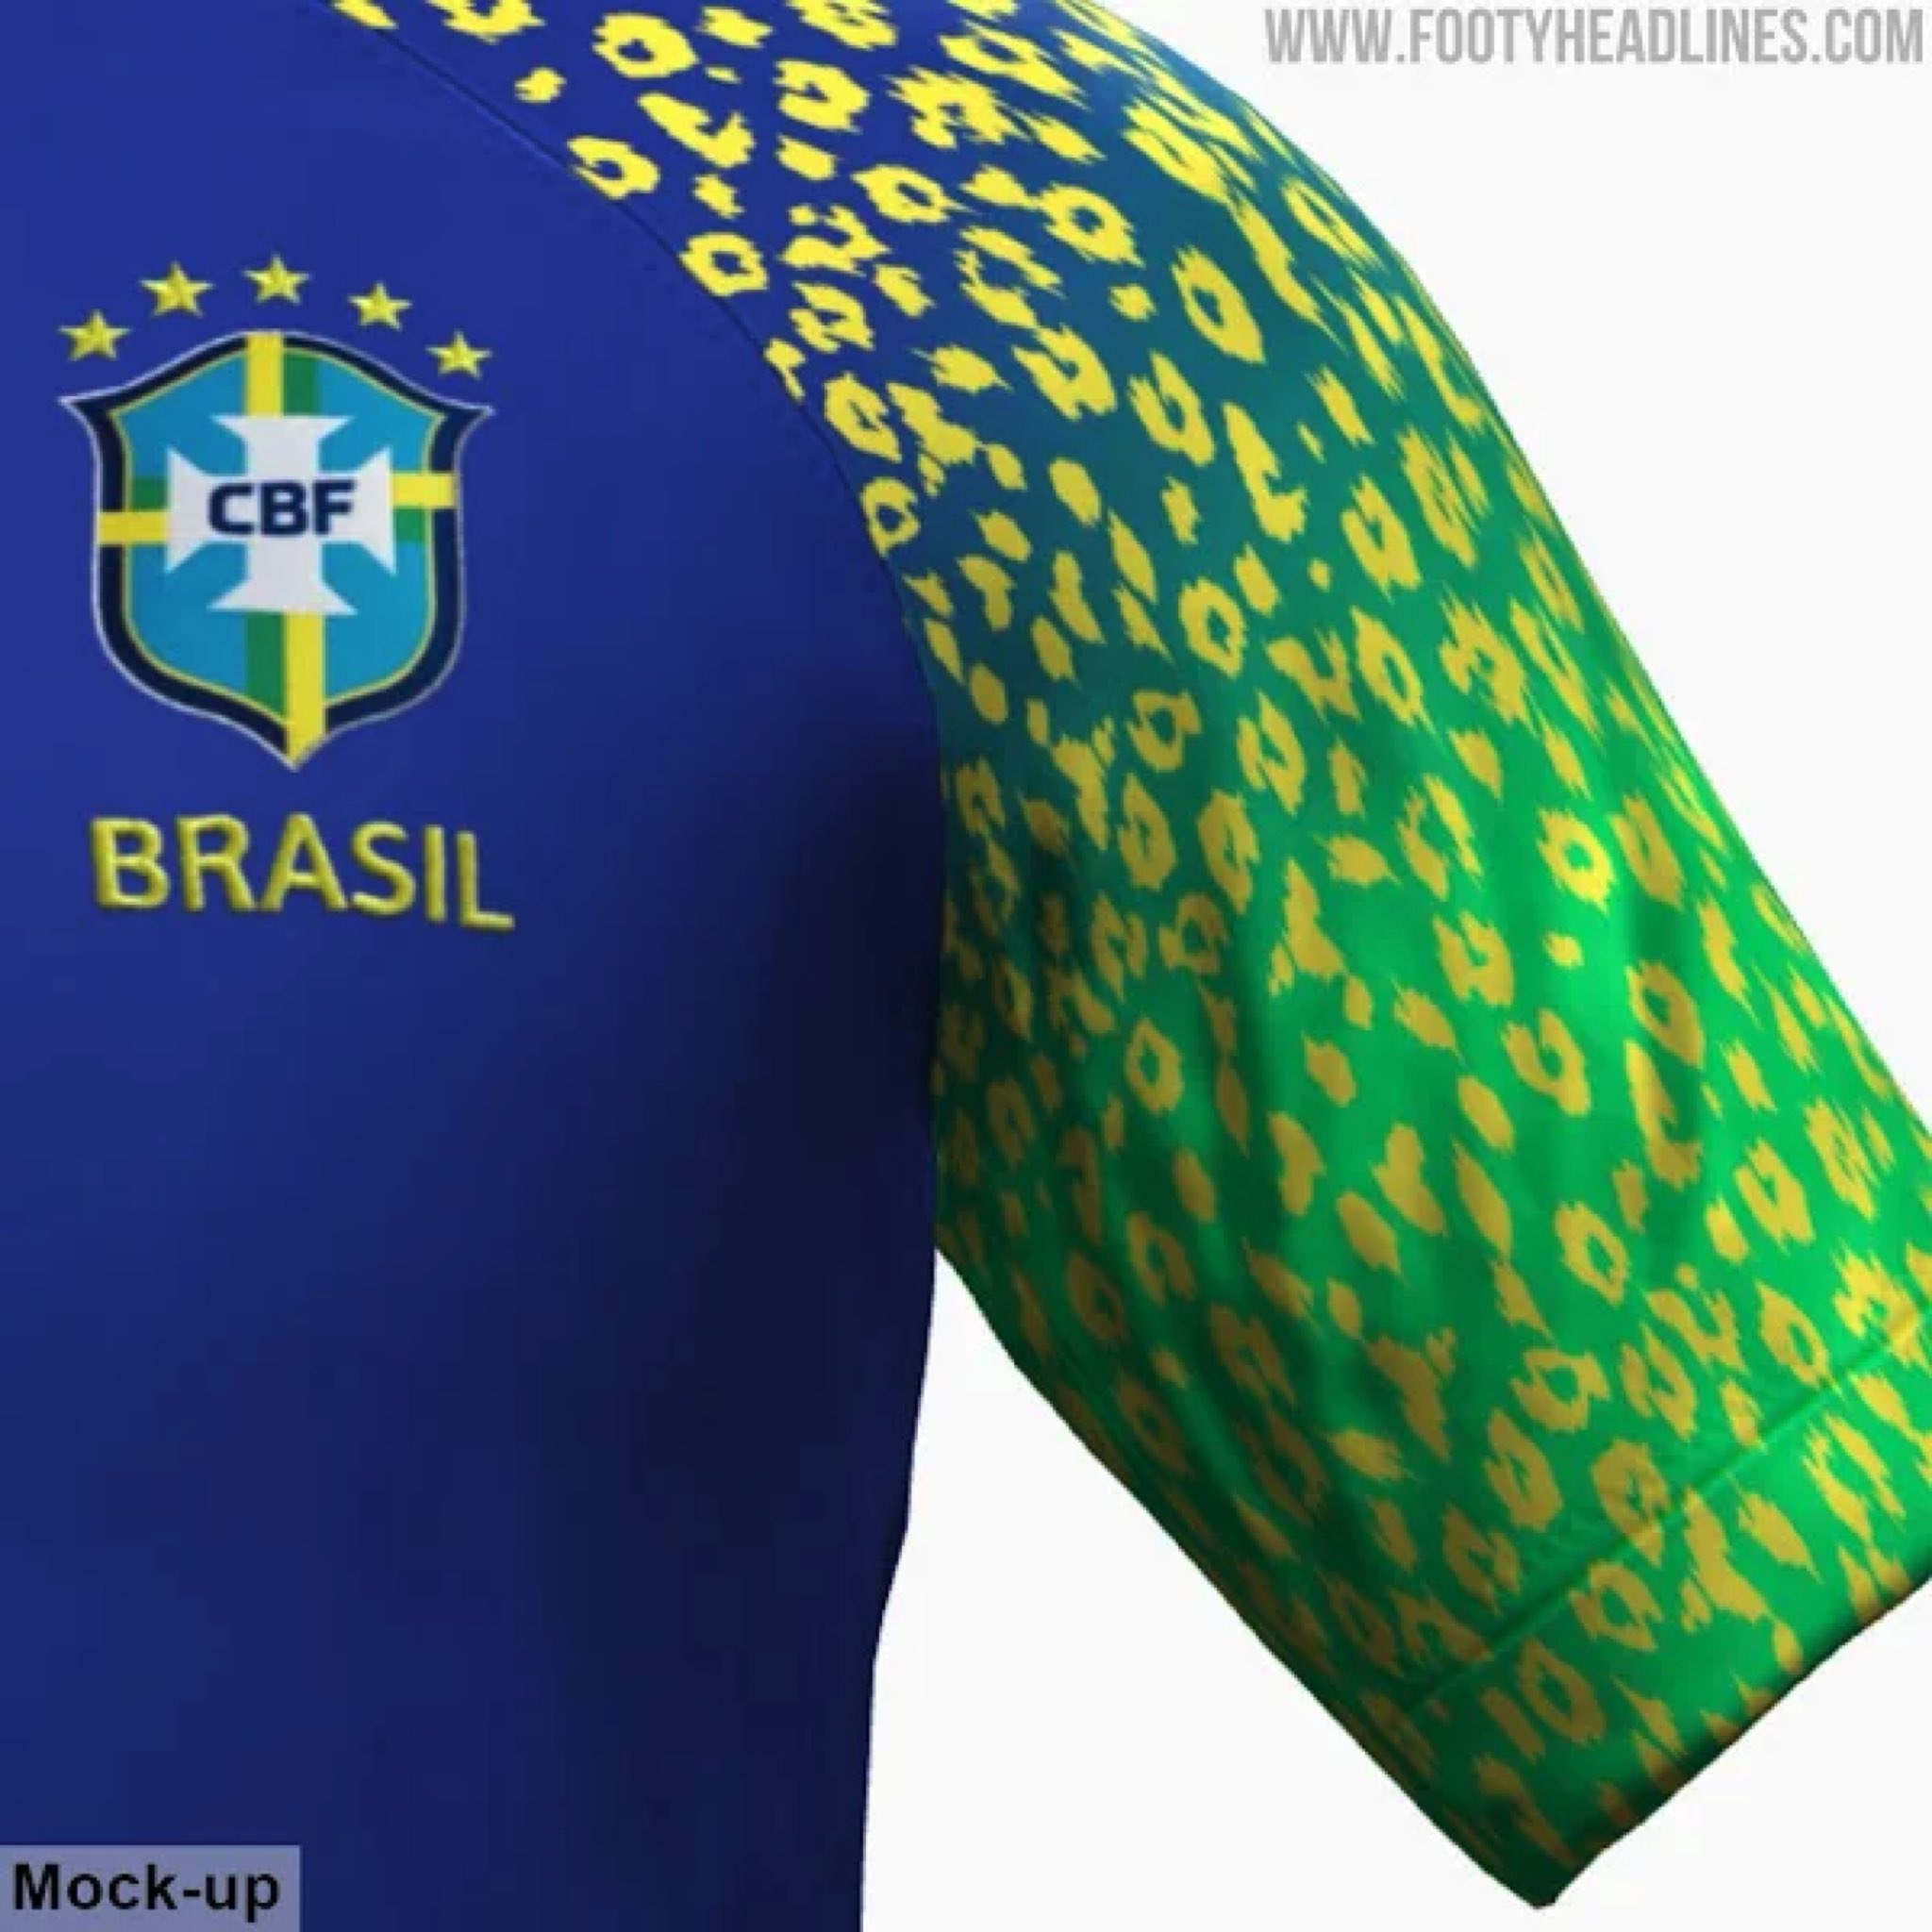 Planeta do Futebol 🌎 on X: Detalhes da camisa II do Brasil para a Copa do  Mundo de 2022, segundo o Footy Headlines, site especializado em camisas de  futebol. 📸 @Footy_Headlines  /